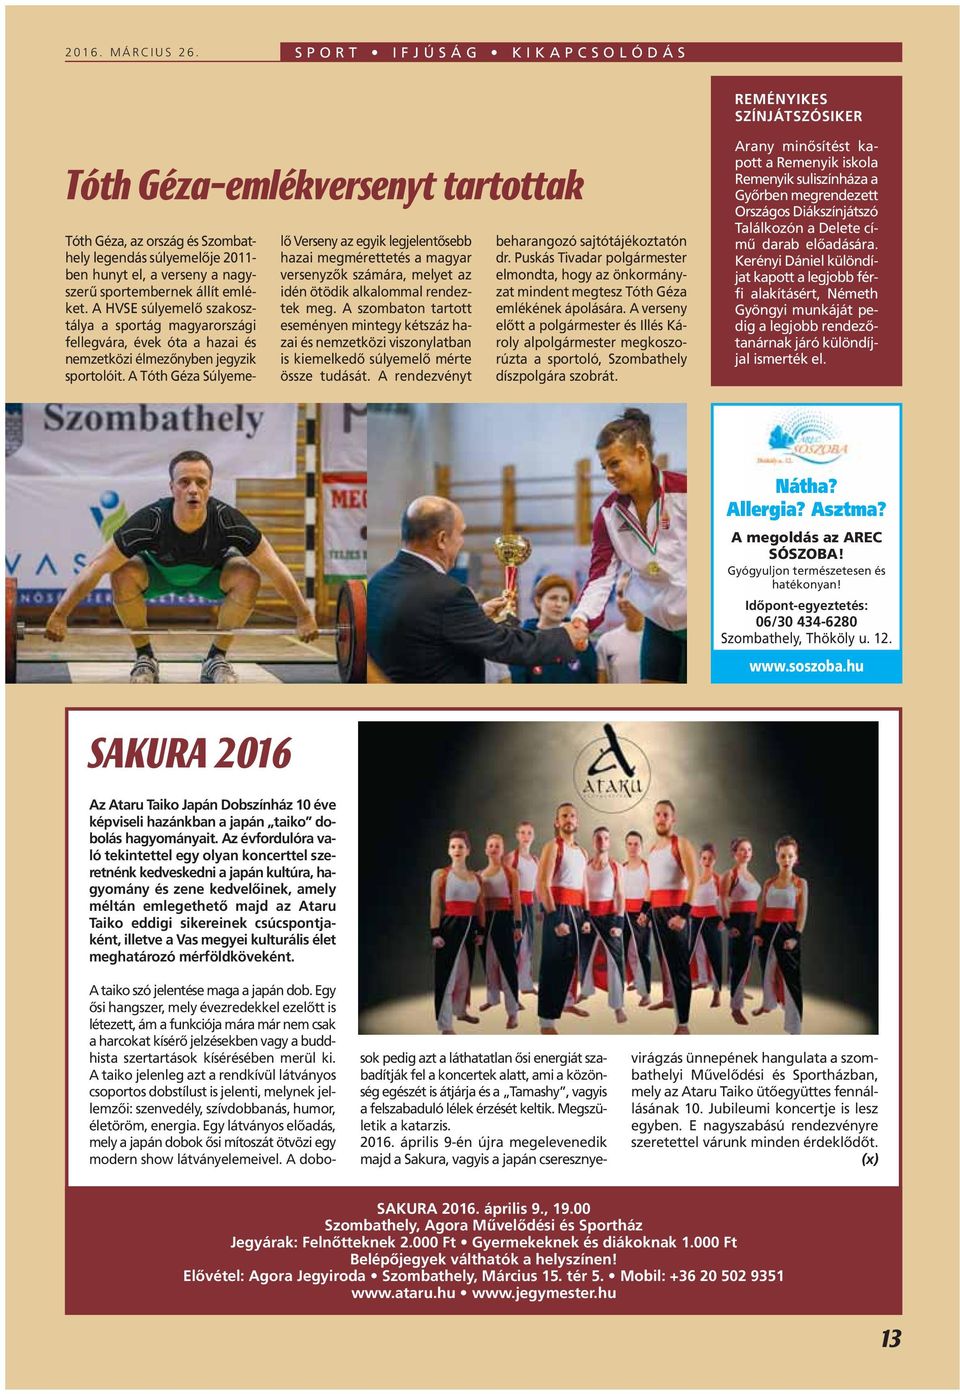 sportembernek állít emléket. A HVSE súlyemelô szakosztálya a sportág magyarországi fellegvára, évek óta a hazai és nemzetközi élmezônyben jegyzik sportolóit.